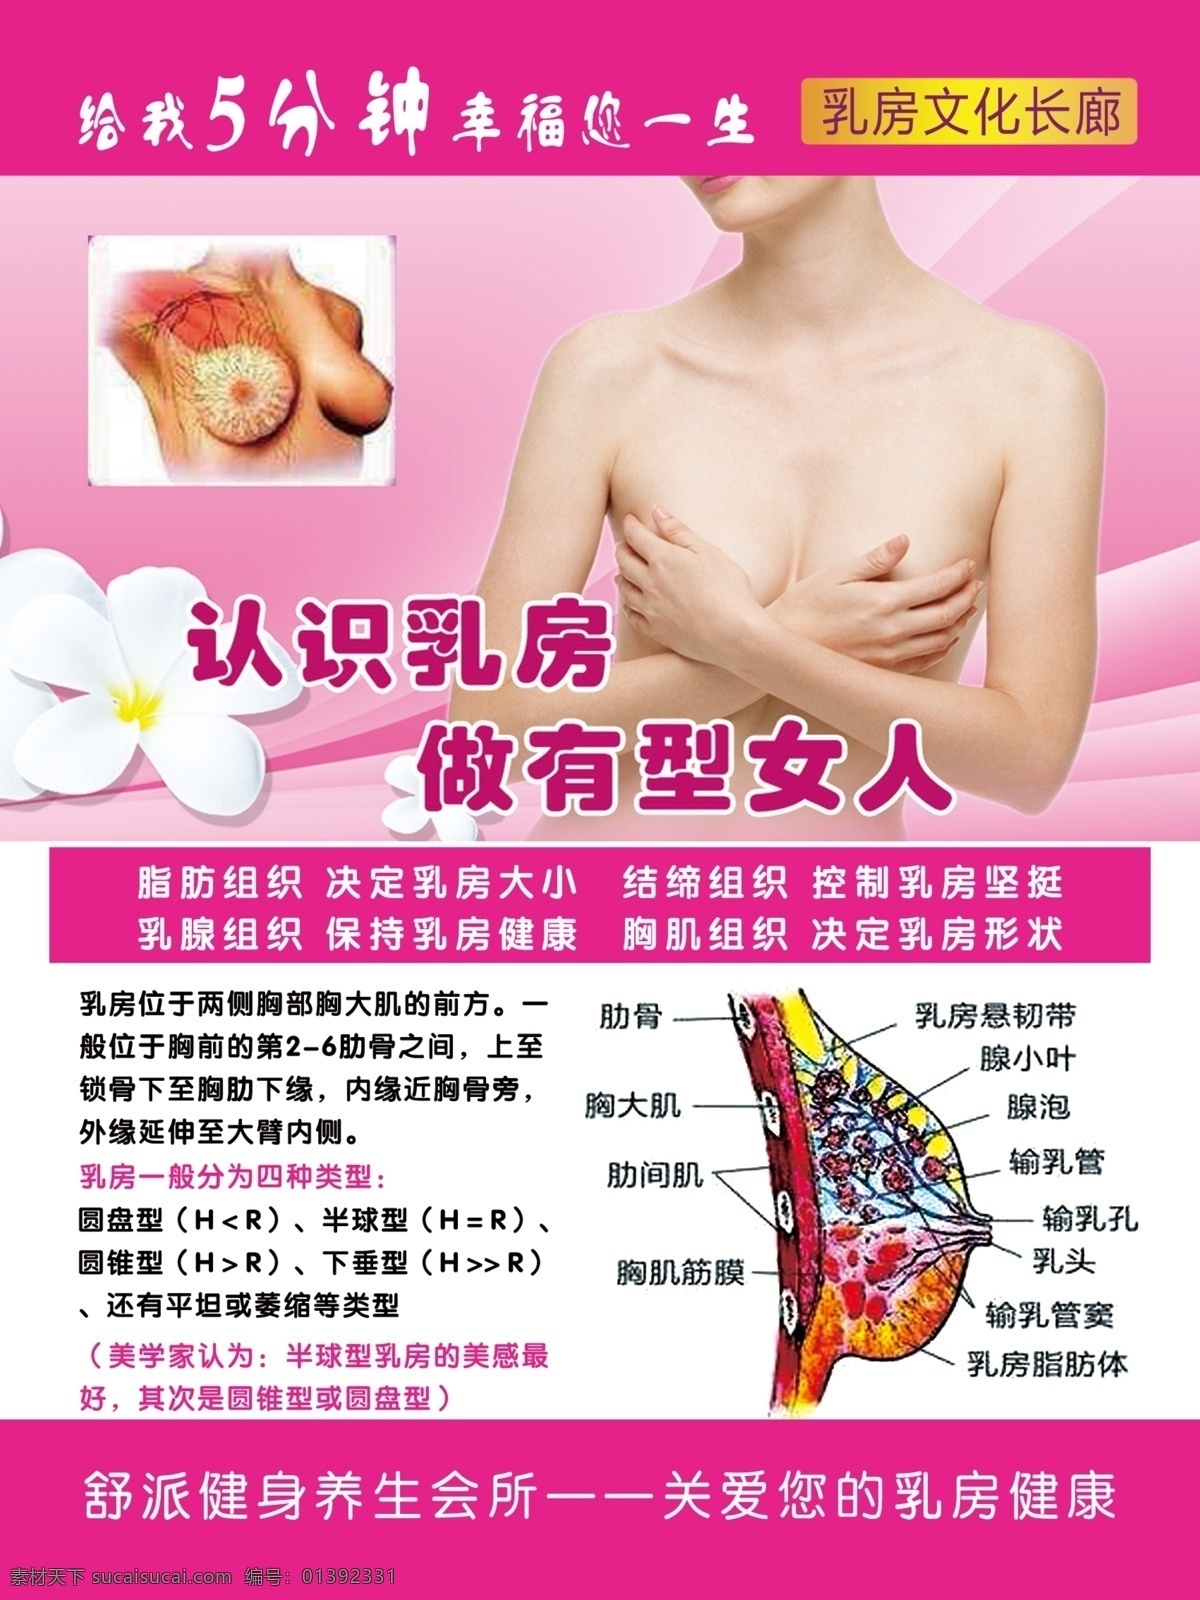 乳房健康 乳房健康展板 乳房护理 乳房保养 乳房健康海报 乳房海报 海报 分层